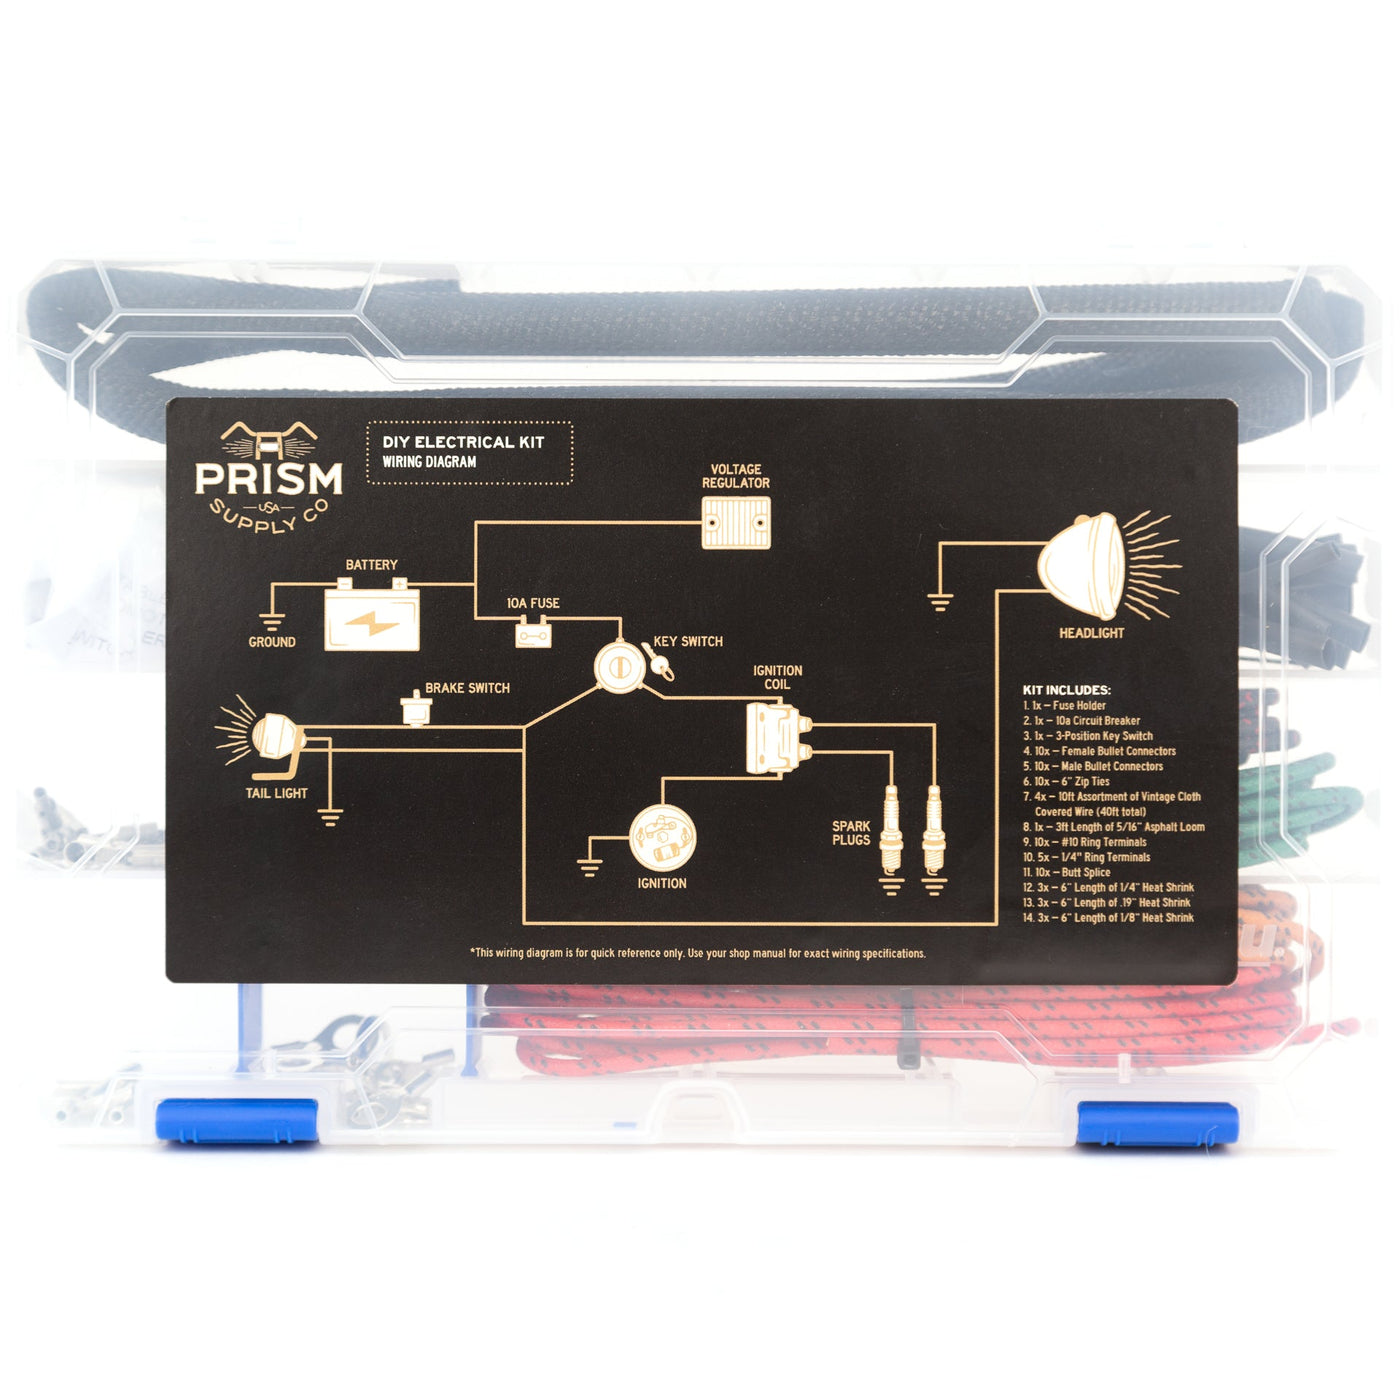 DIY Electrical Kit - Prism Supply